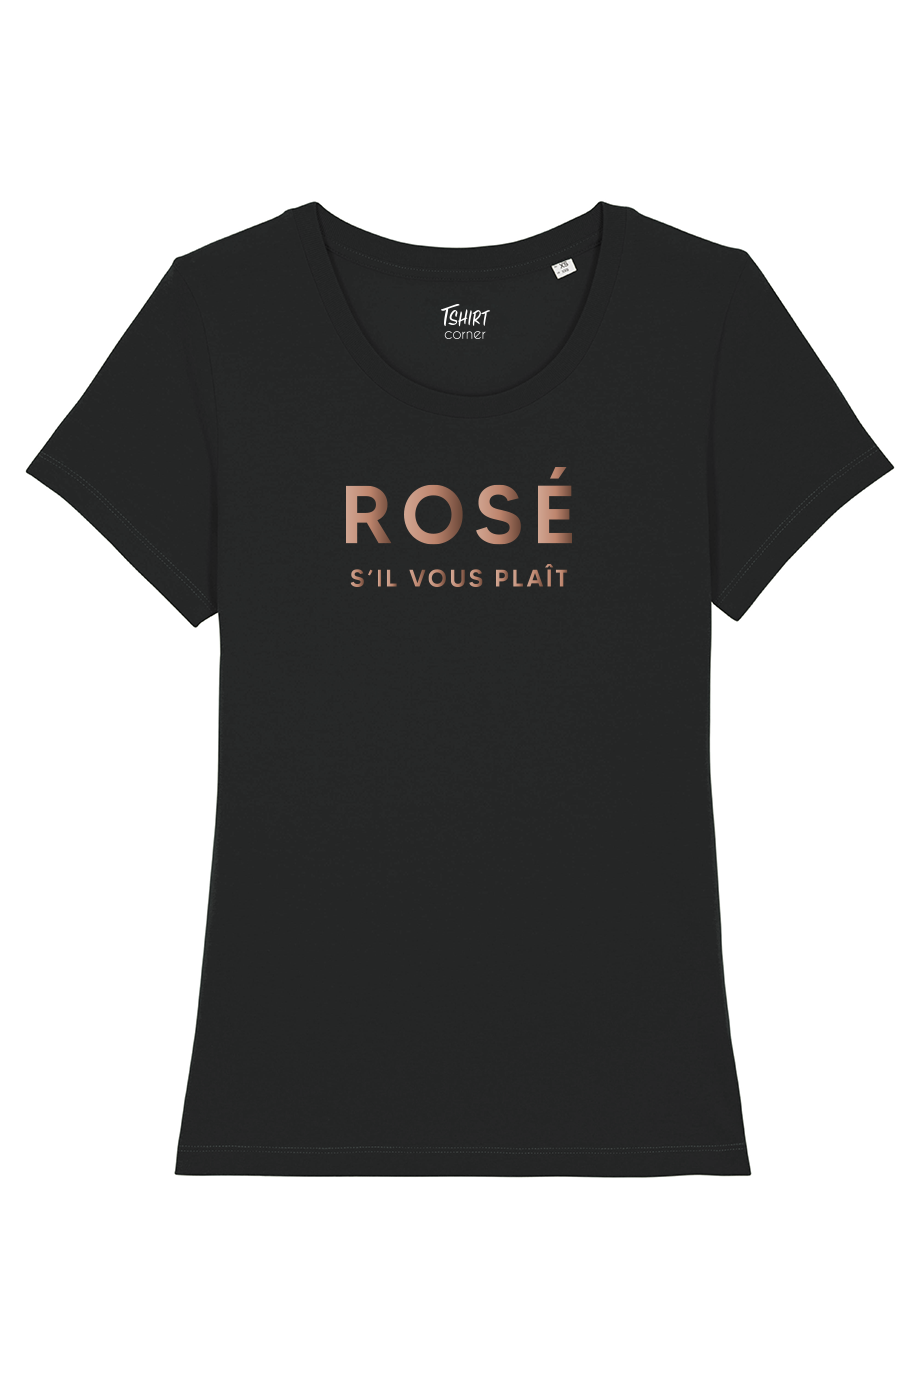 T-Shirt Femme - Rosé S'il vous plaît - Or Rose